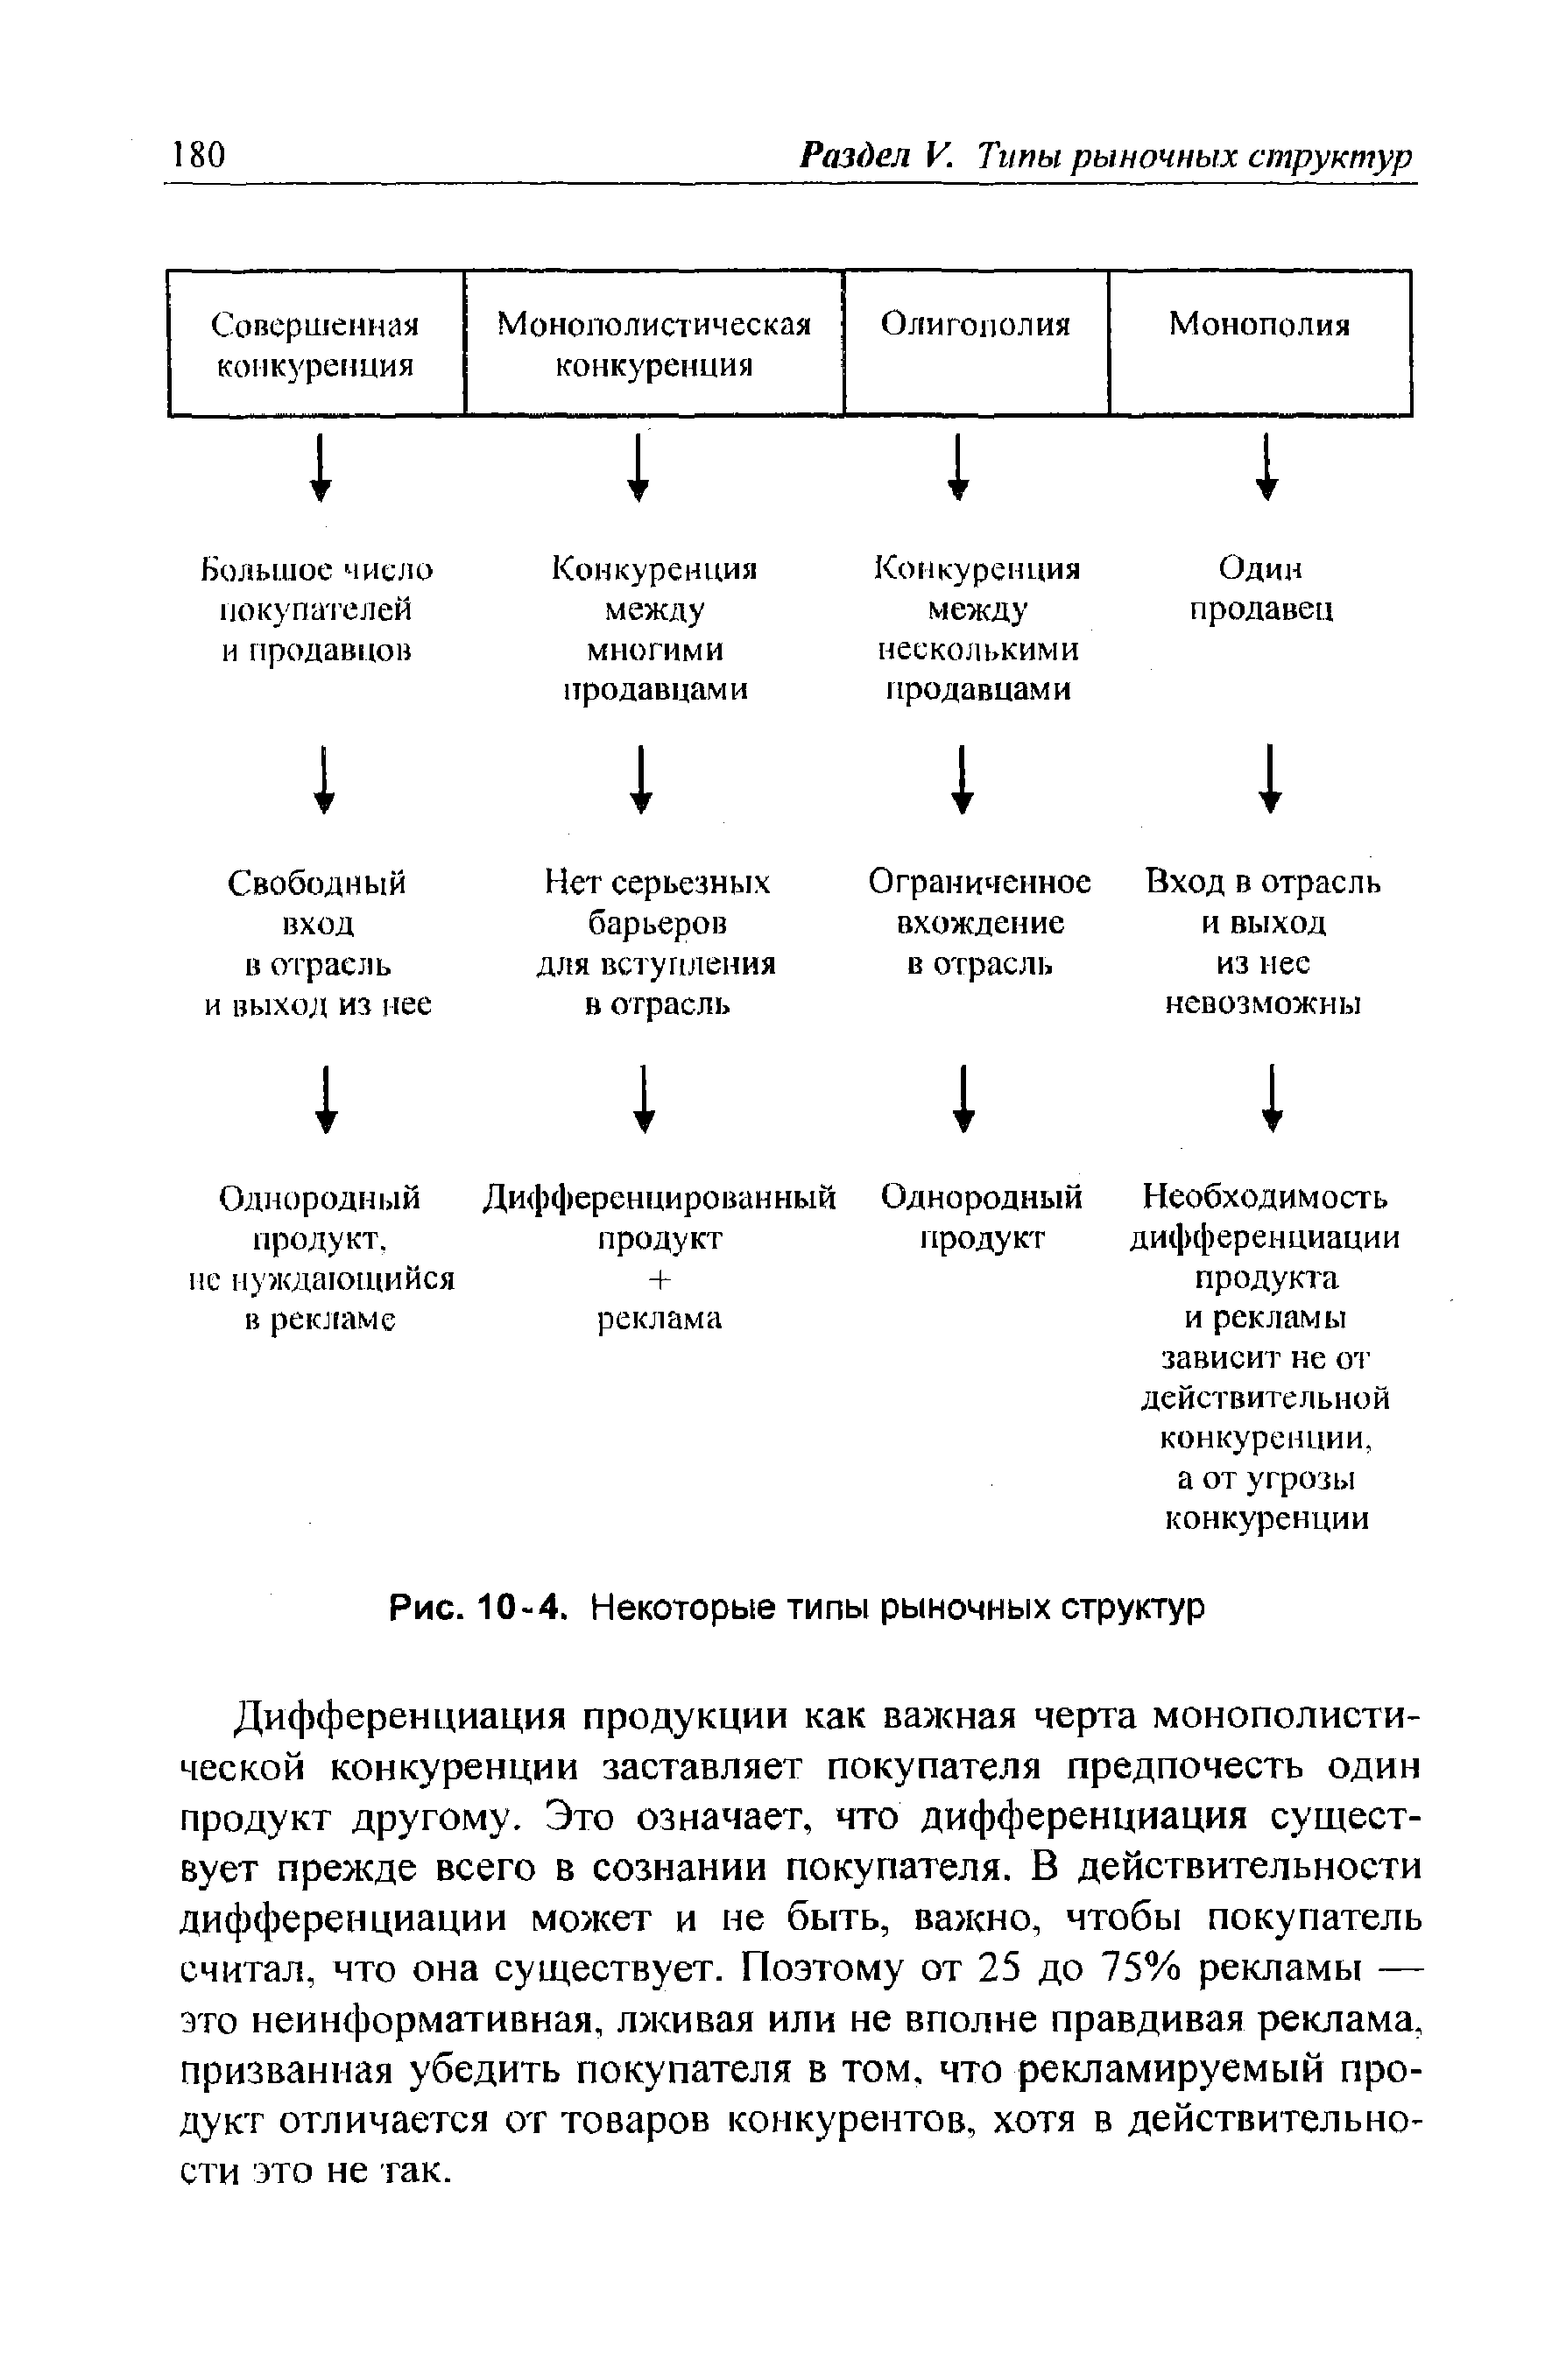 Рис. 10-4. Некоторые типы рыночных структур
